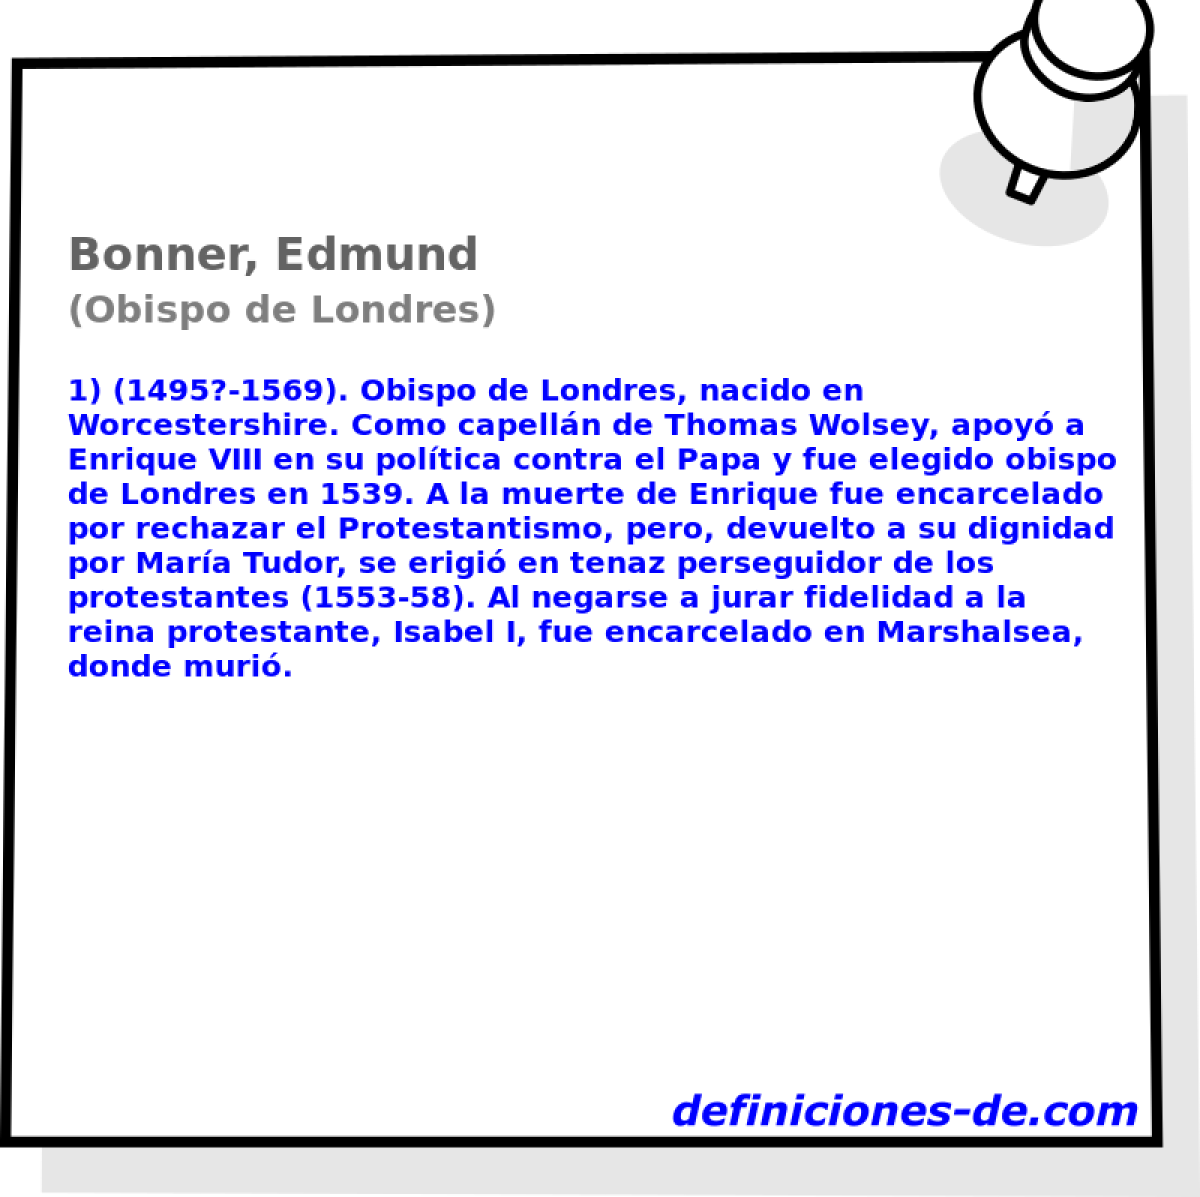 Bonner, Edmund (Obispo de Londres)